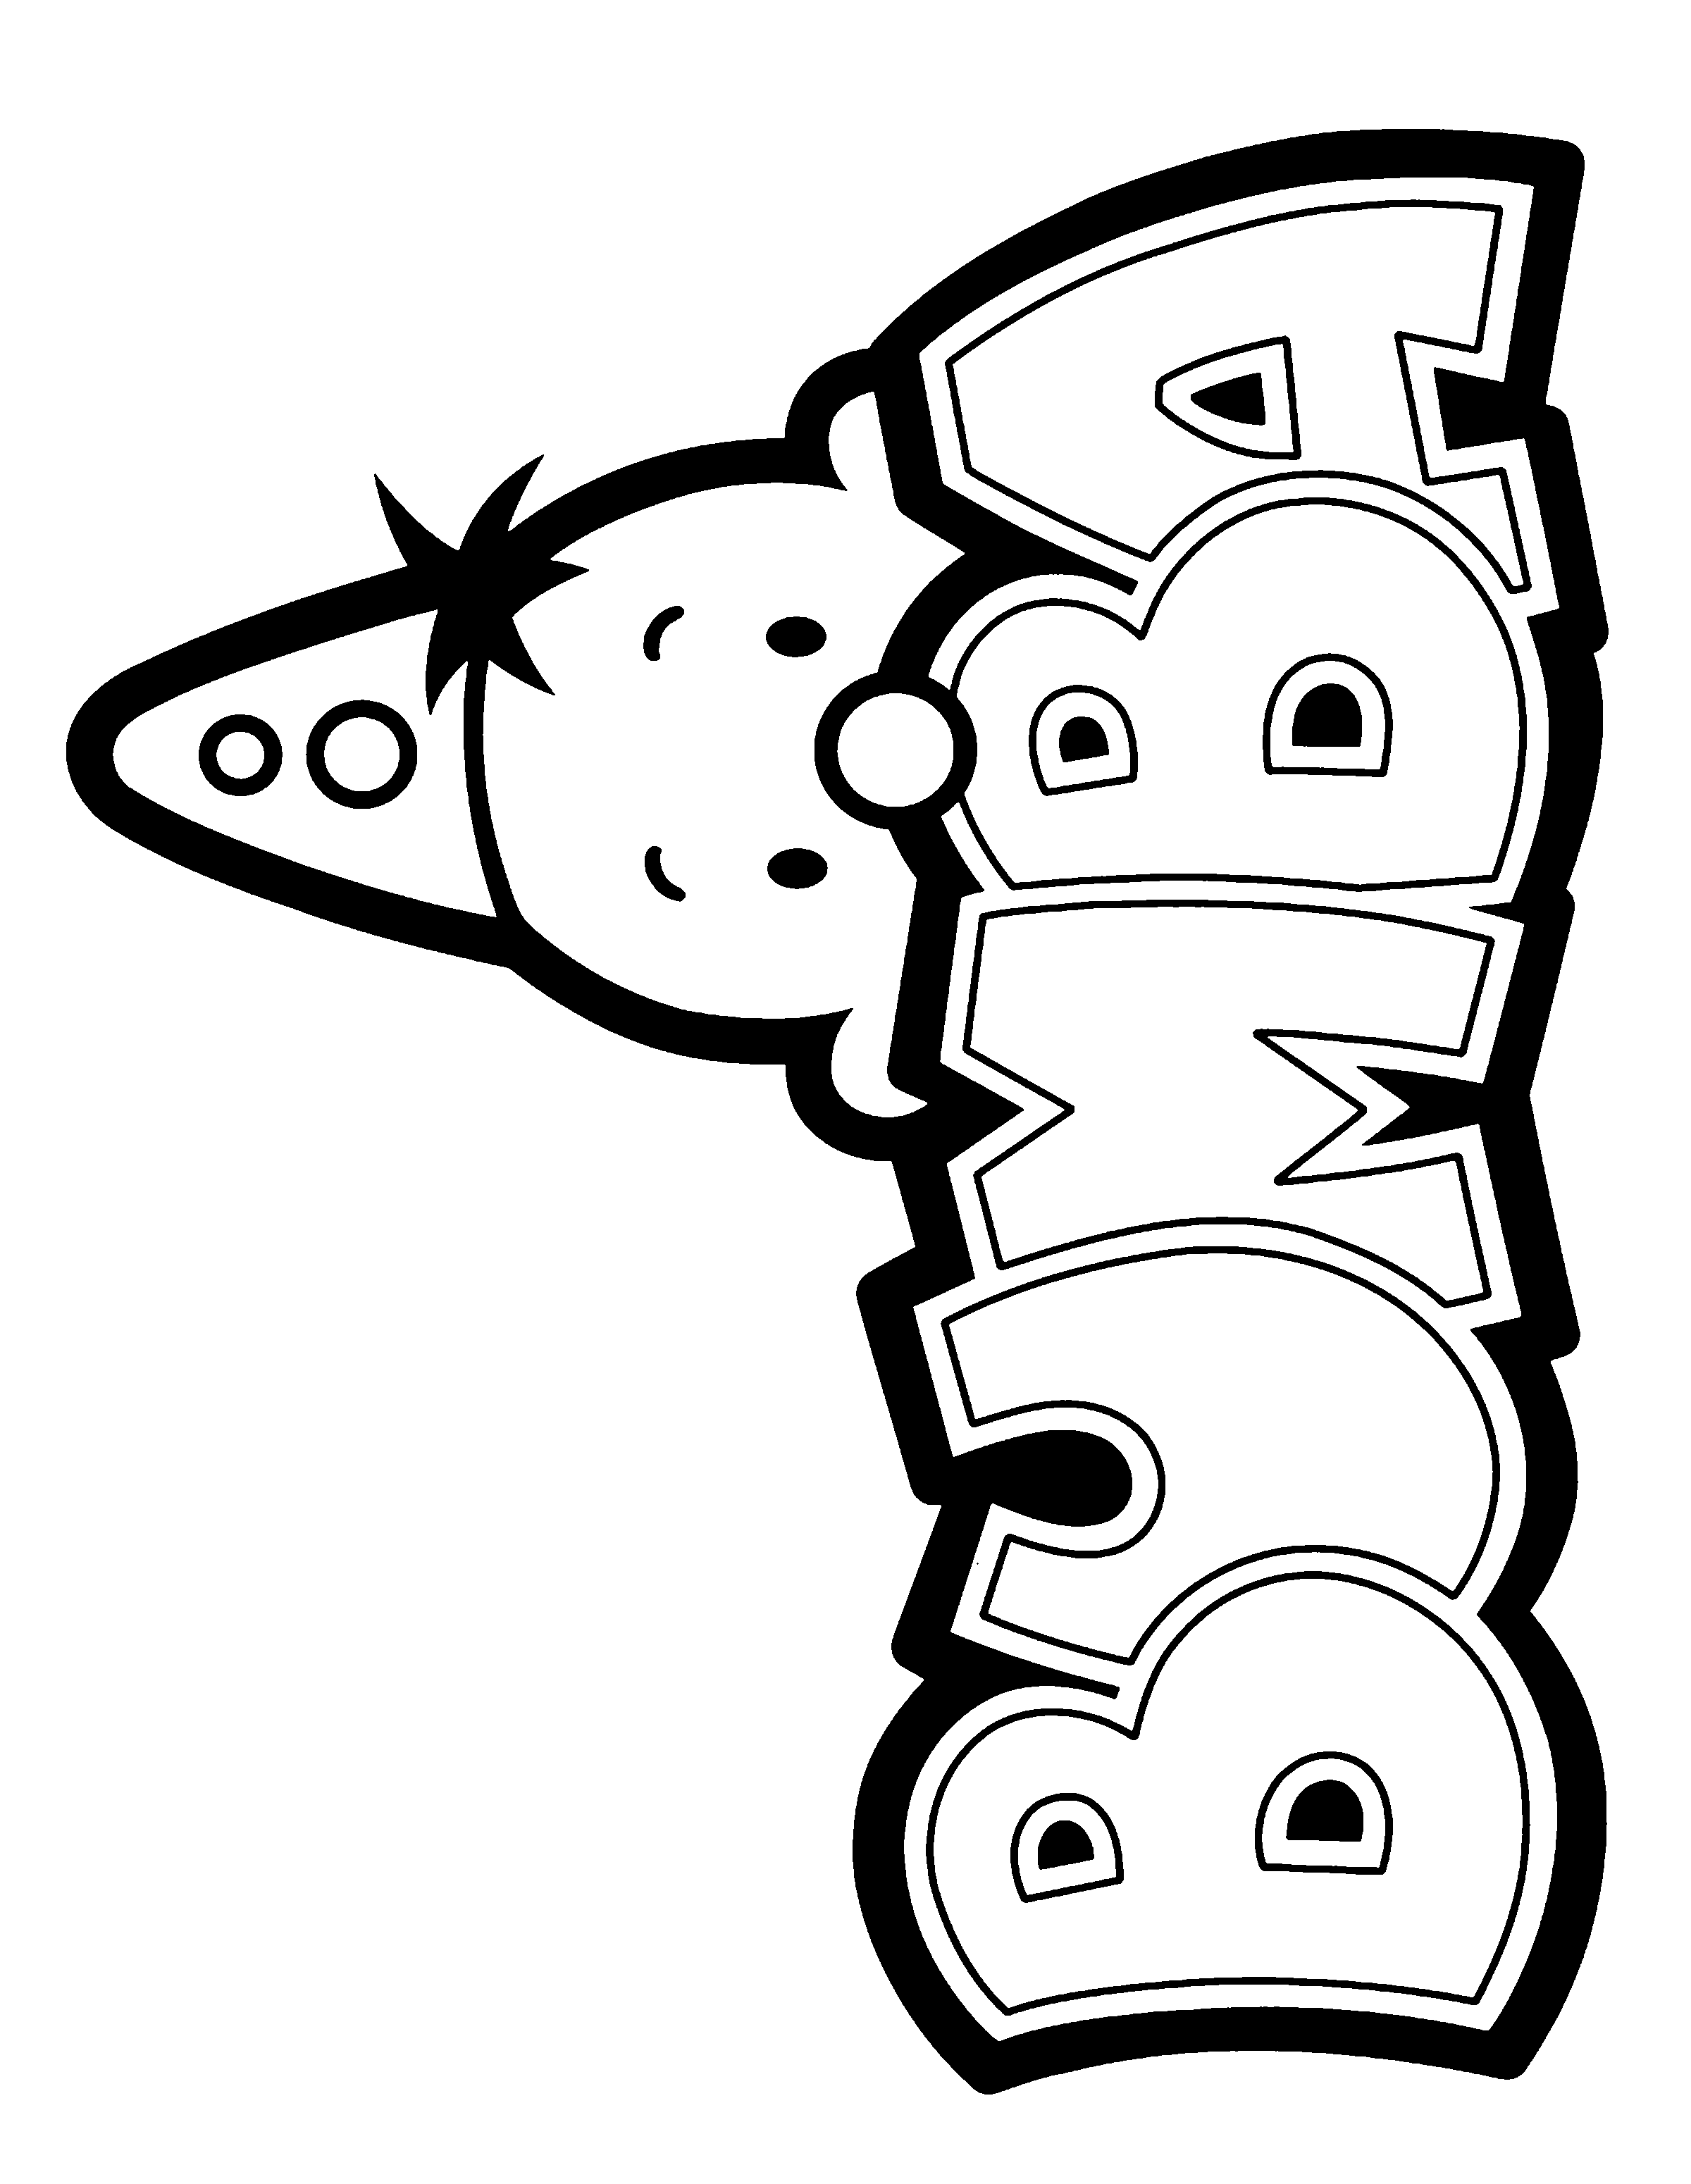 Logotipo de Bumba para colorear, con la cabecita del payaso